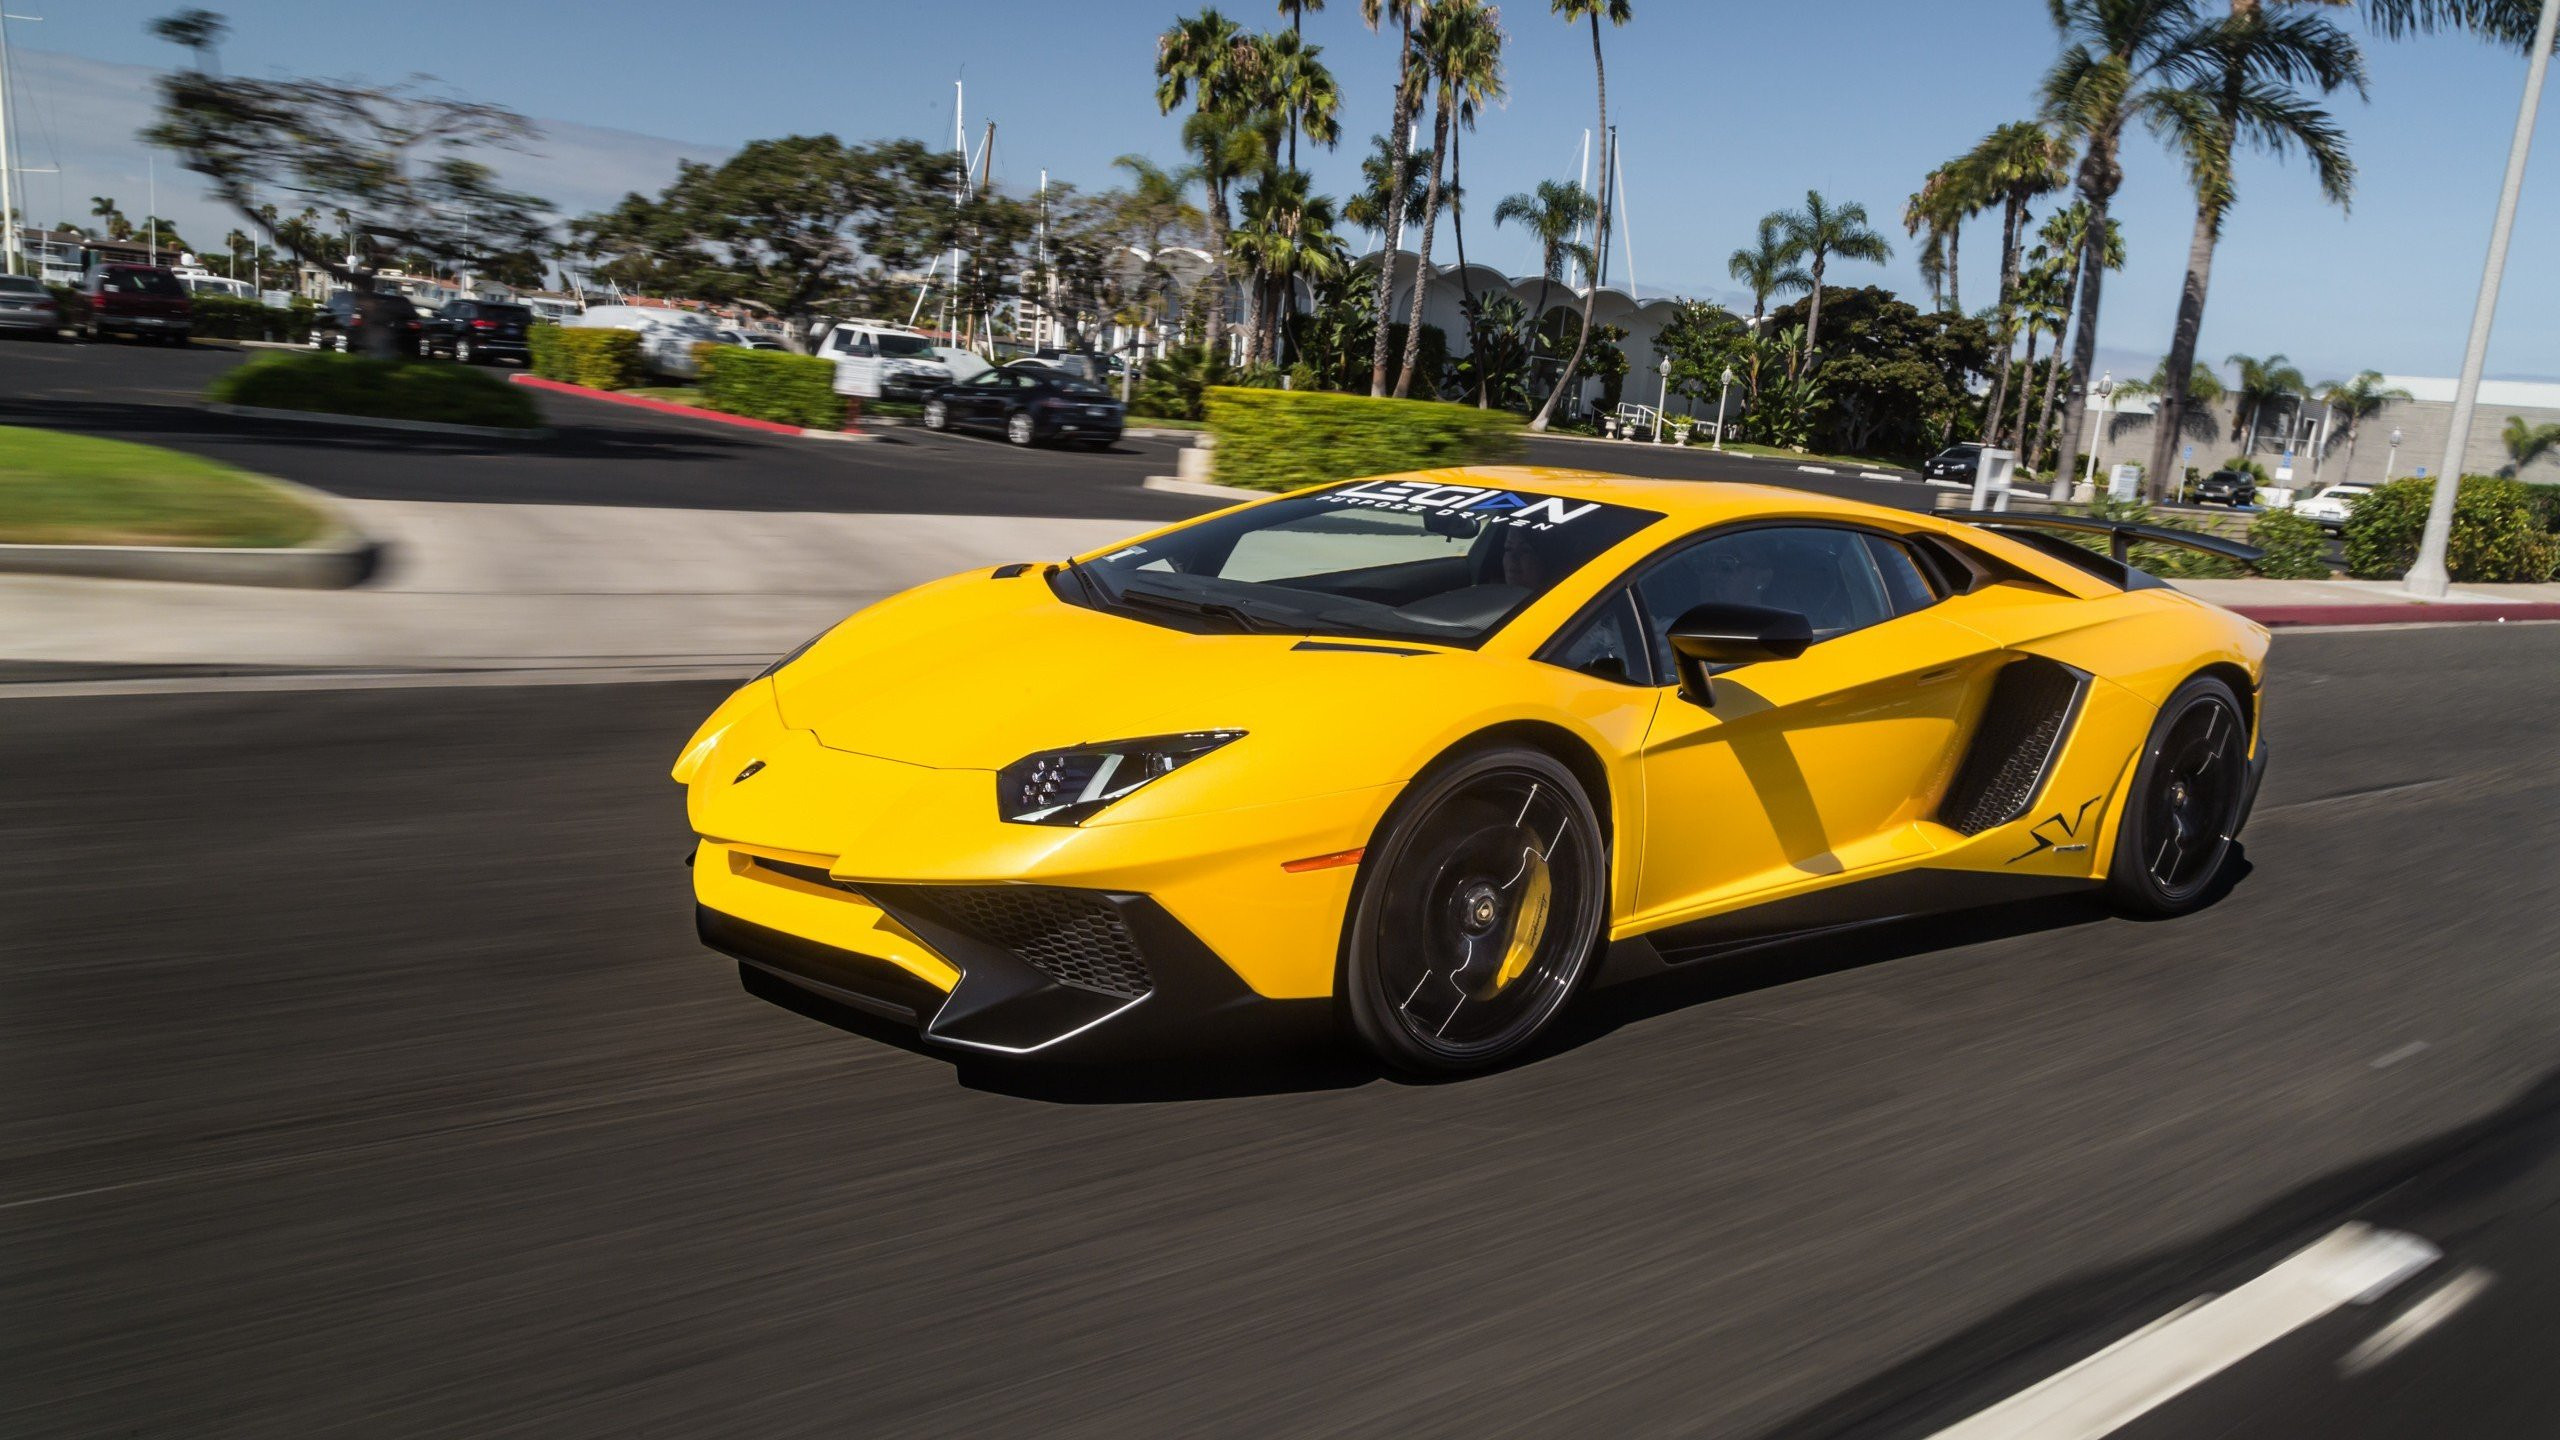 Lamborghini - một trong những thương hiệu siêu xe danh tiếng nhất thế giới. Hình nền Lamborghini sẽ đem đến cho bạn cái nhìn chân thật, sắc nét và chất lượng về những chiếc xe của hãng này. Hơn thế nữa, được quan sát những đường nét thiết kế đặc trưng của Lamborghini sẽ khiến bạn cảm thấy hoàn hảo hơn bao giờ hết.